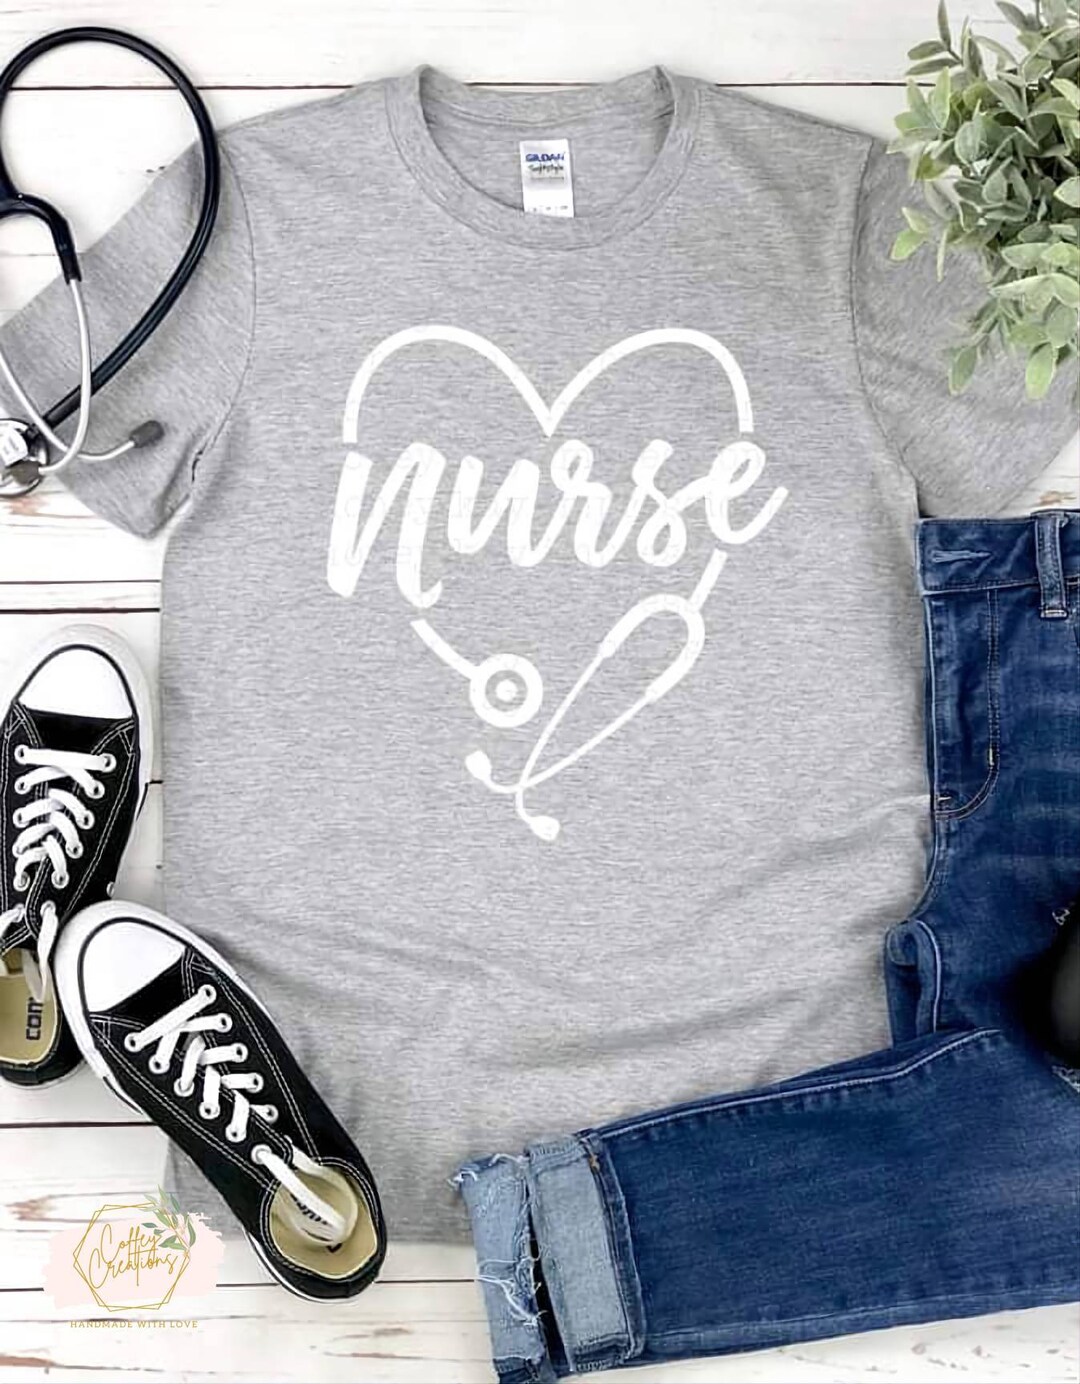 Nurse Stethoscope Teenurse Tshirtnurse Shirtnurse's - Etsy